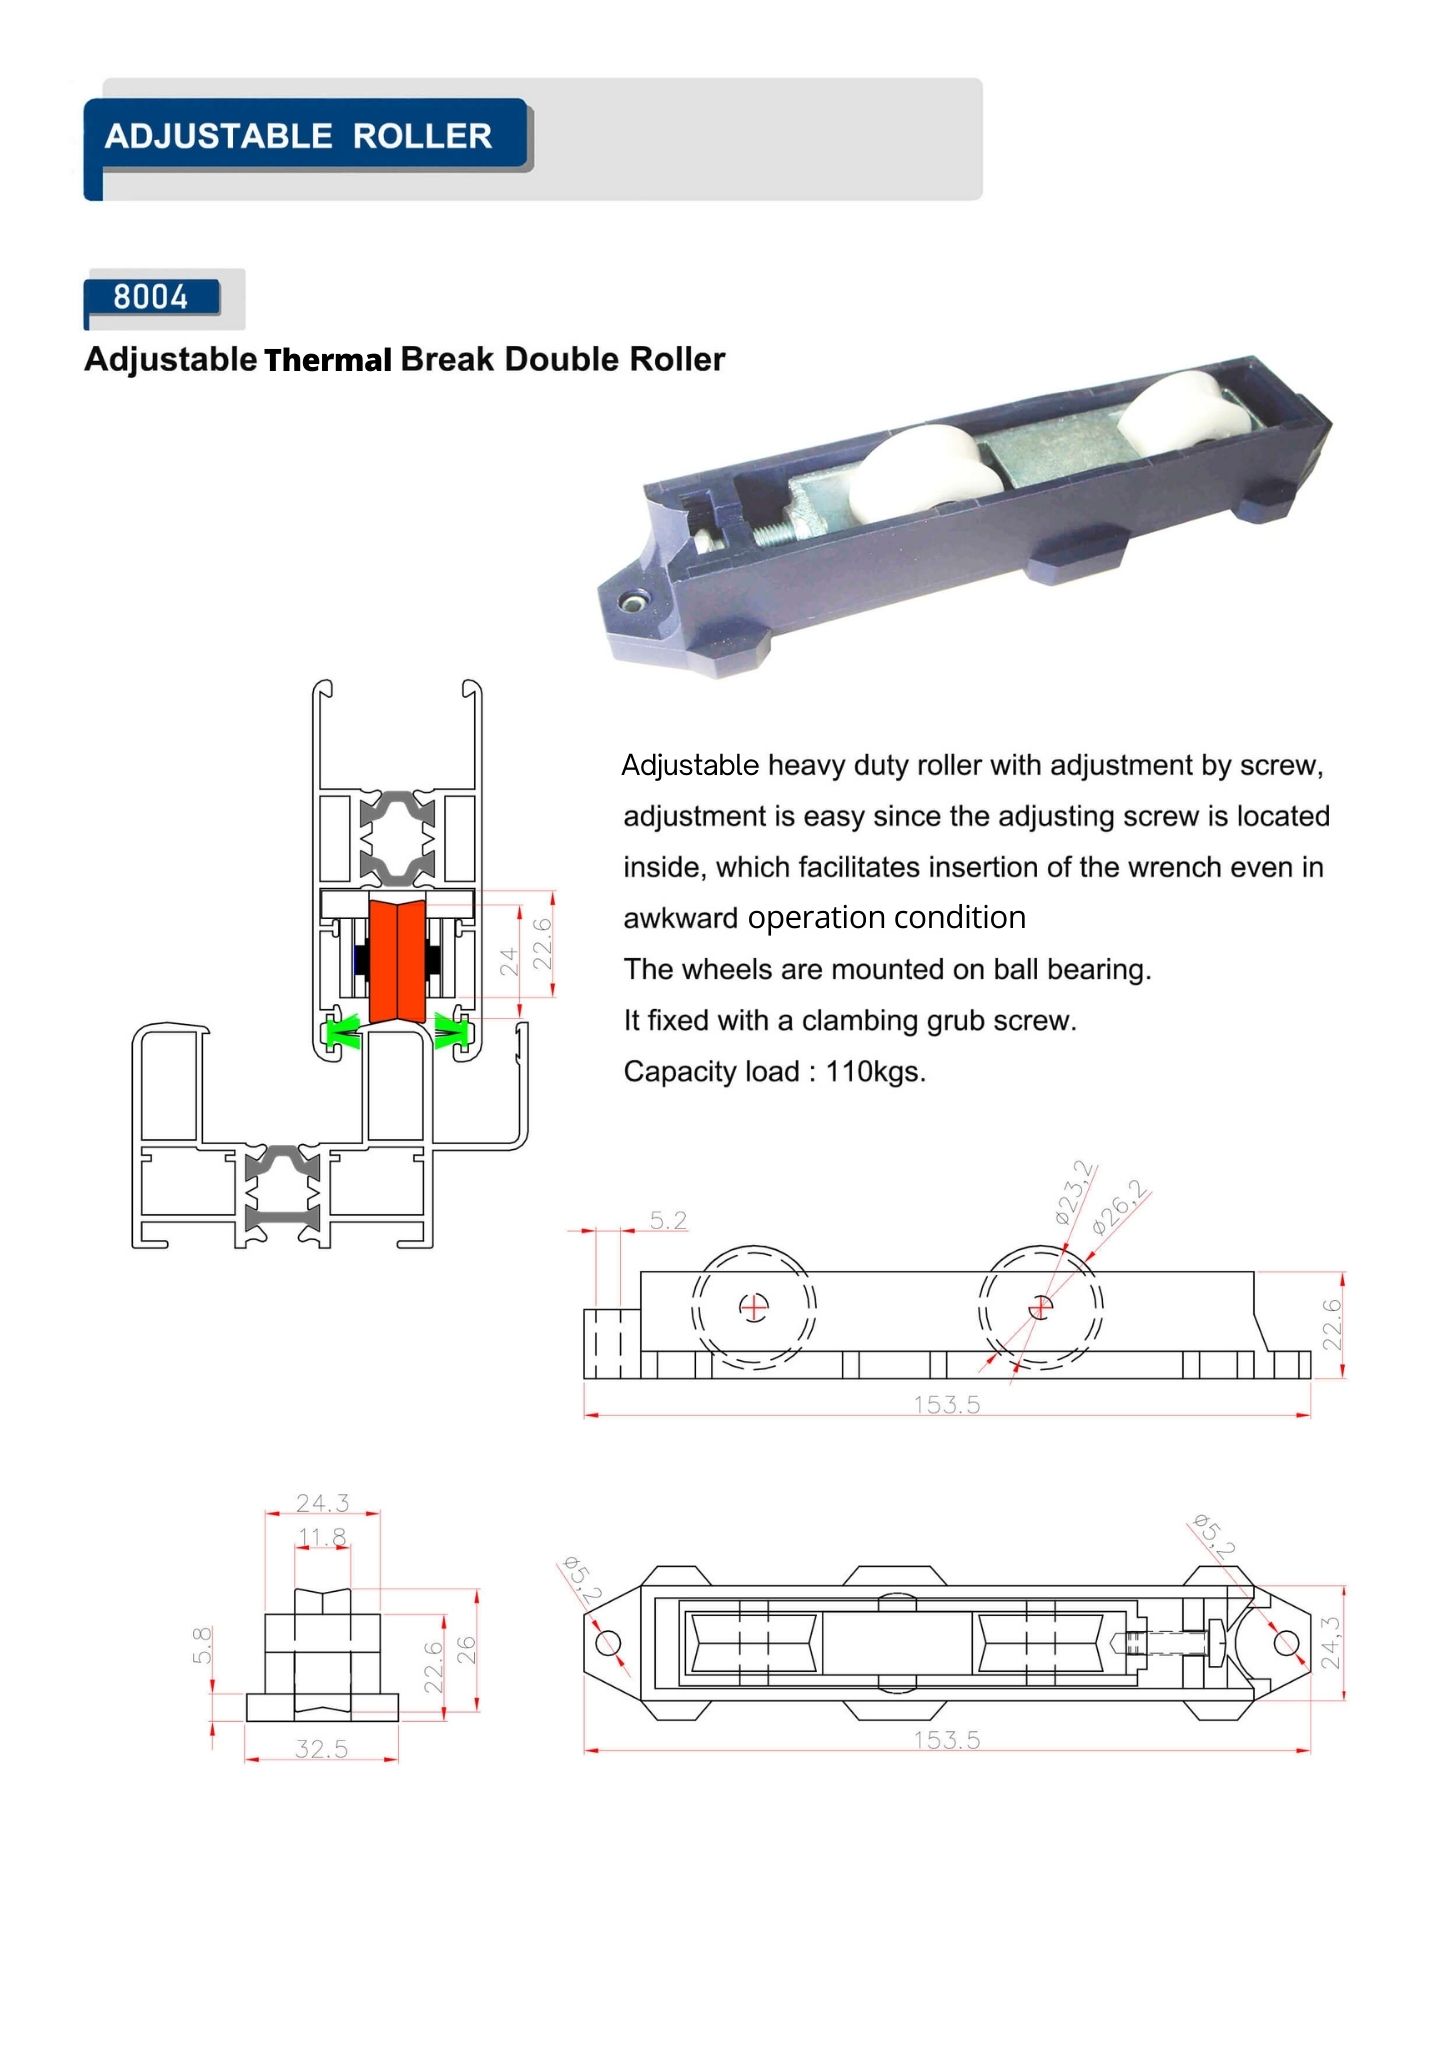 Adjustable Thermal Break Double Roller